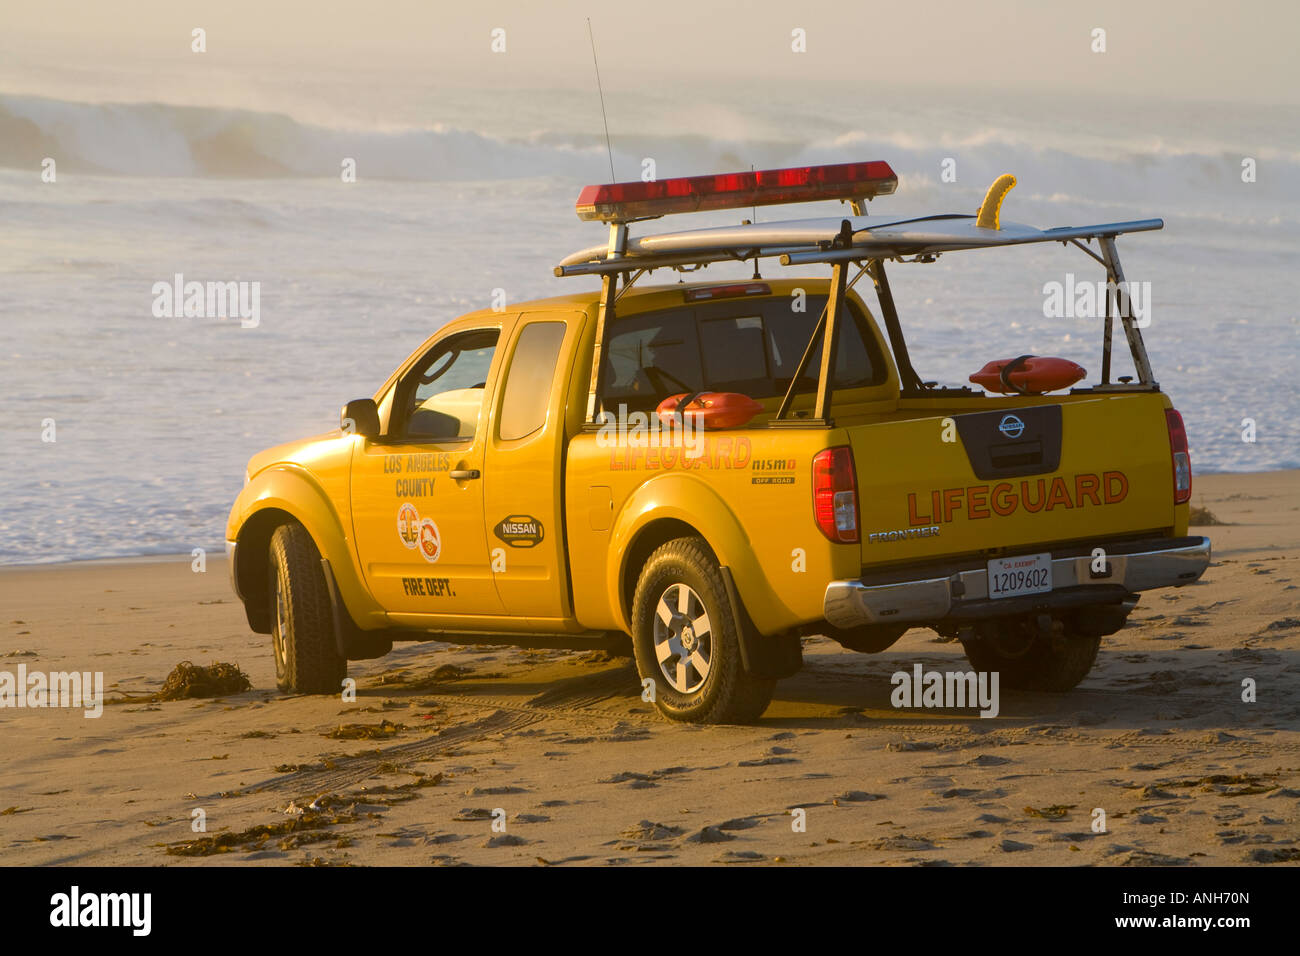 Los Angeles County Lifeguard regardant des grosses vagues à partir de son camion à Zuma Beach Malibu Los Angeles County California United States Banque D'Images